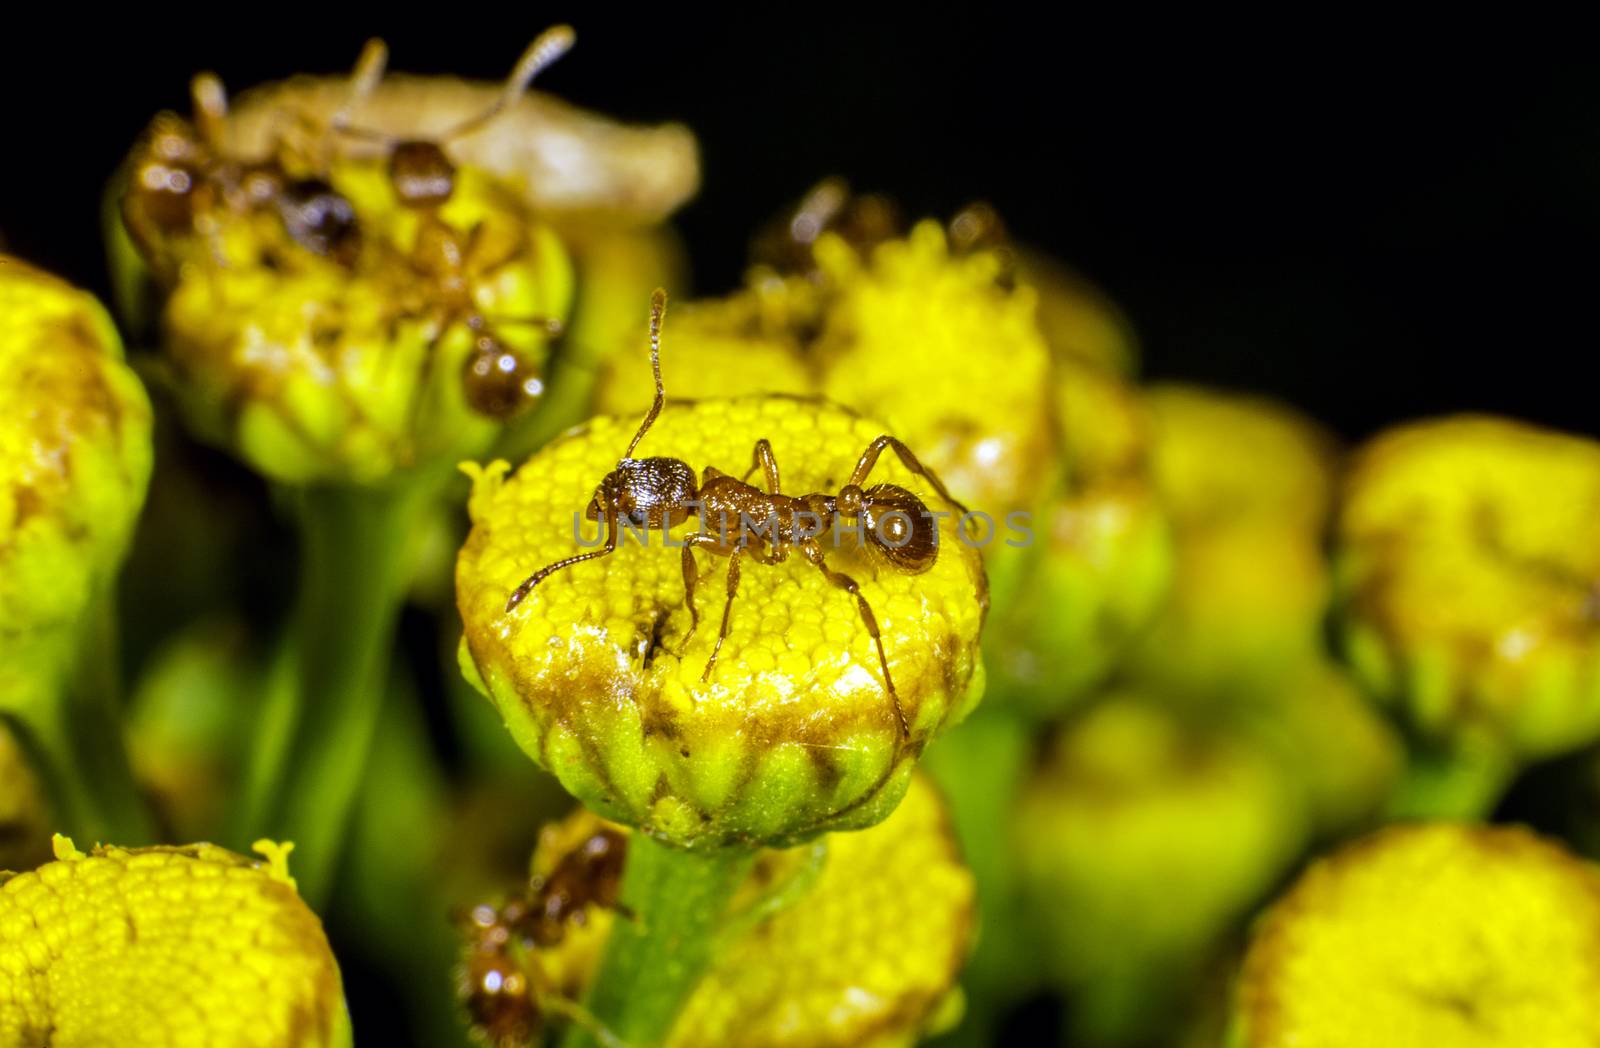 Ants patrolling on a flower